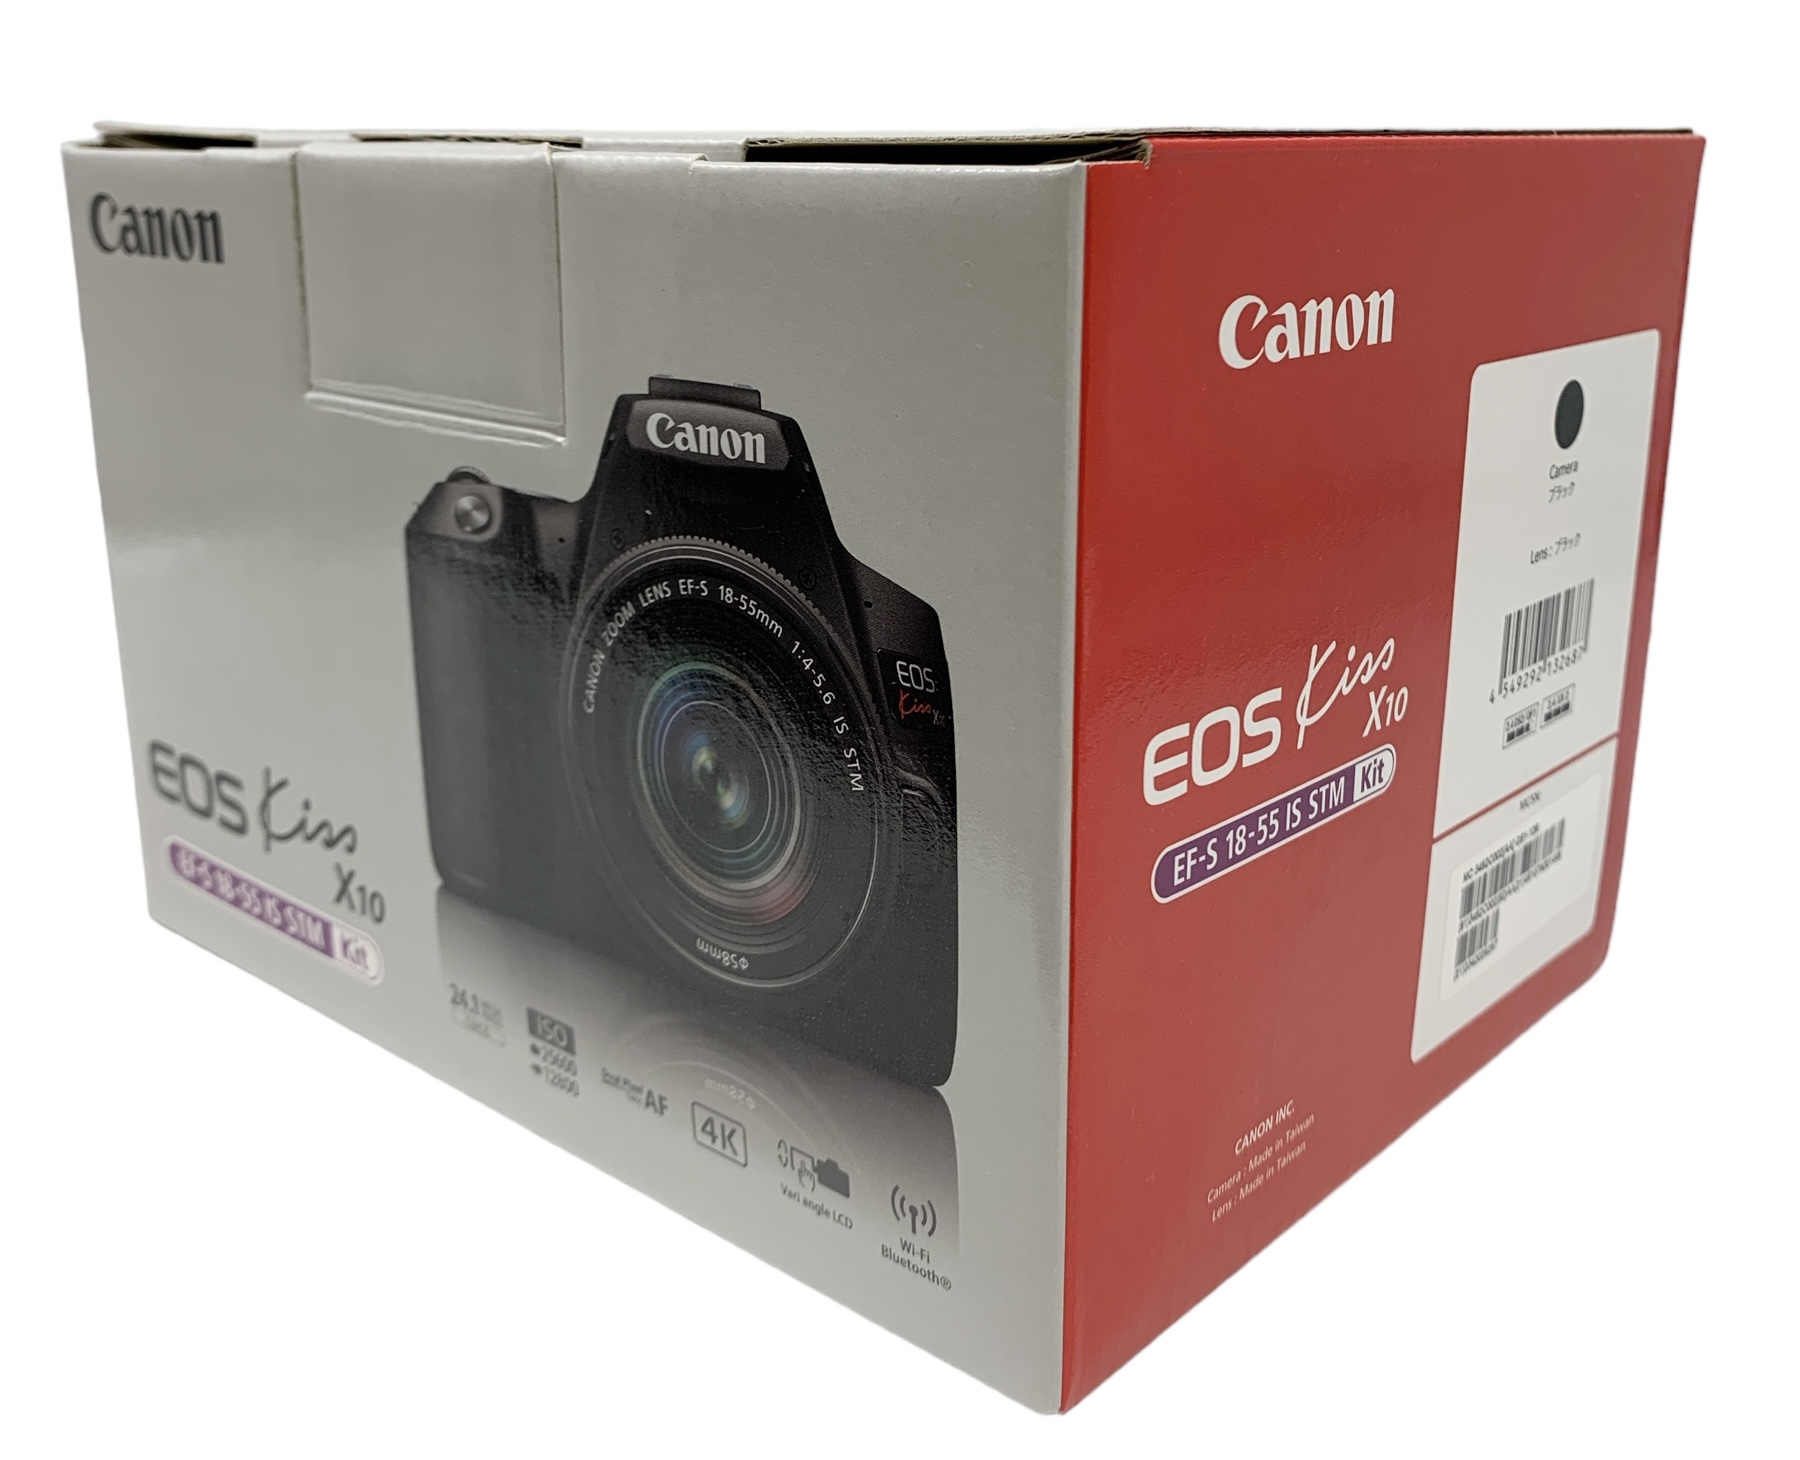 Canon EOS Kiss X10 EF-S 18-55 IS STM Kit линзы комплект цифровой однообъективный зеркальный камера BLK черный Canon с коробкой 